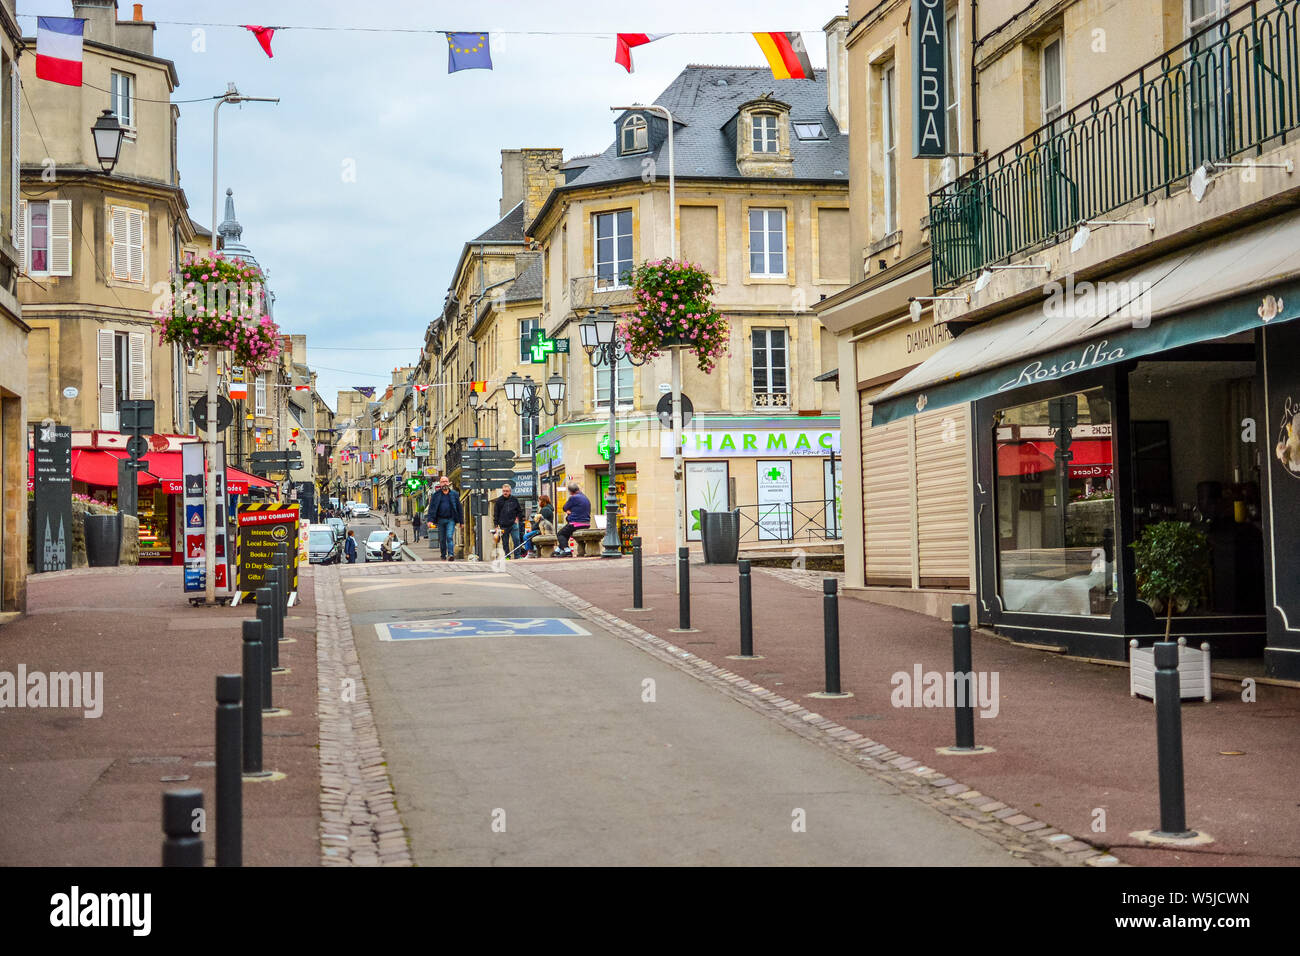 Turisti e locali francese a piedi lungo una strada rue Saint-Jean main street passato caffetterie e negozi in Normandia città di Bayeux, Francia Foto Stock